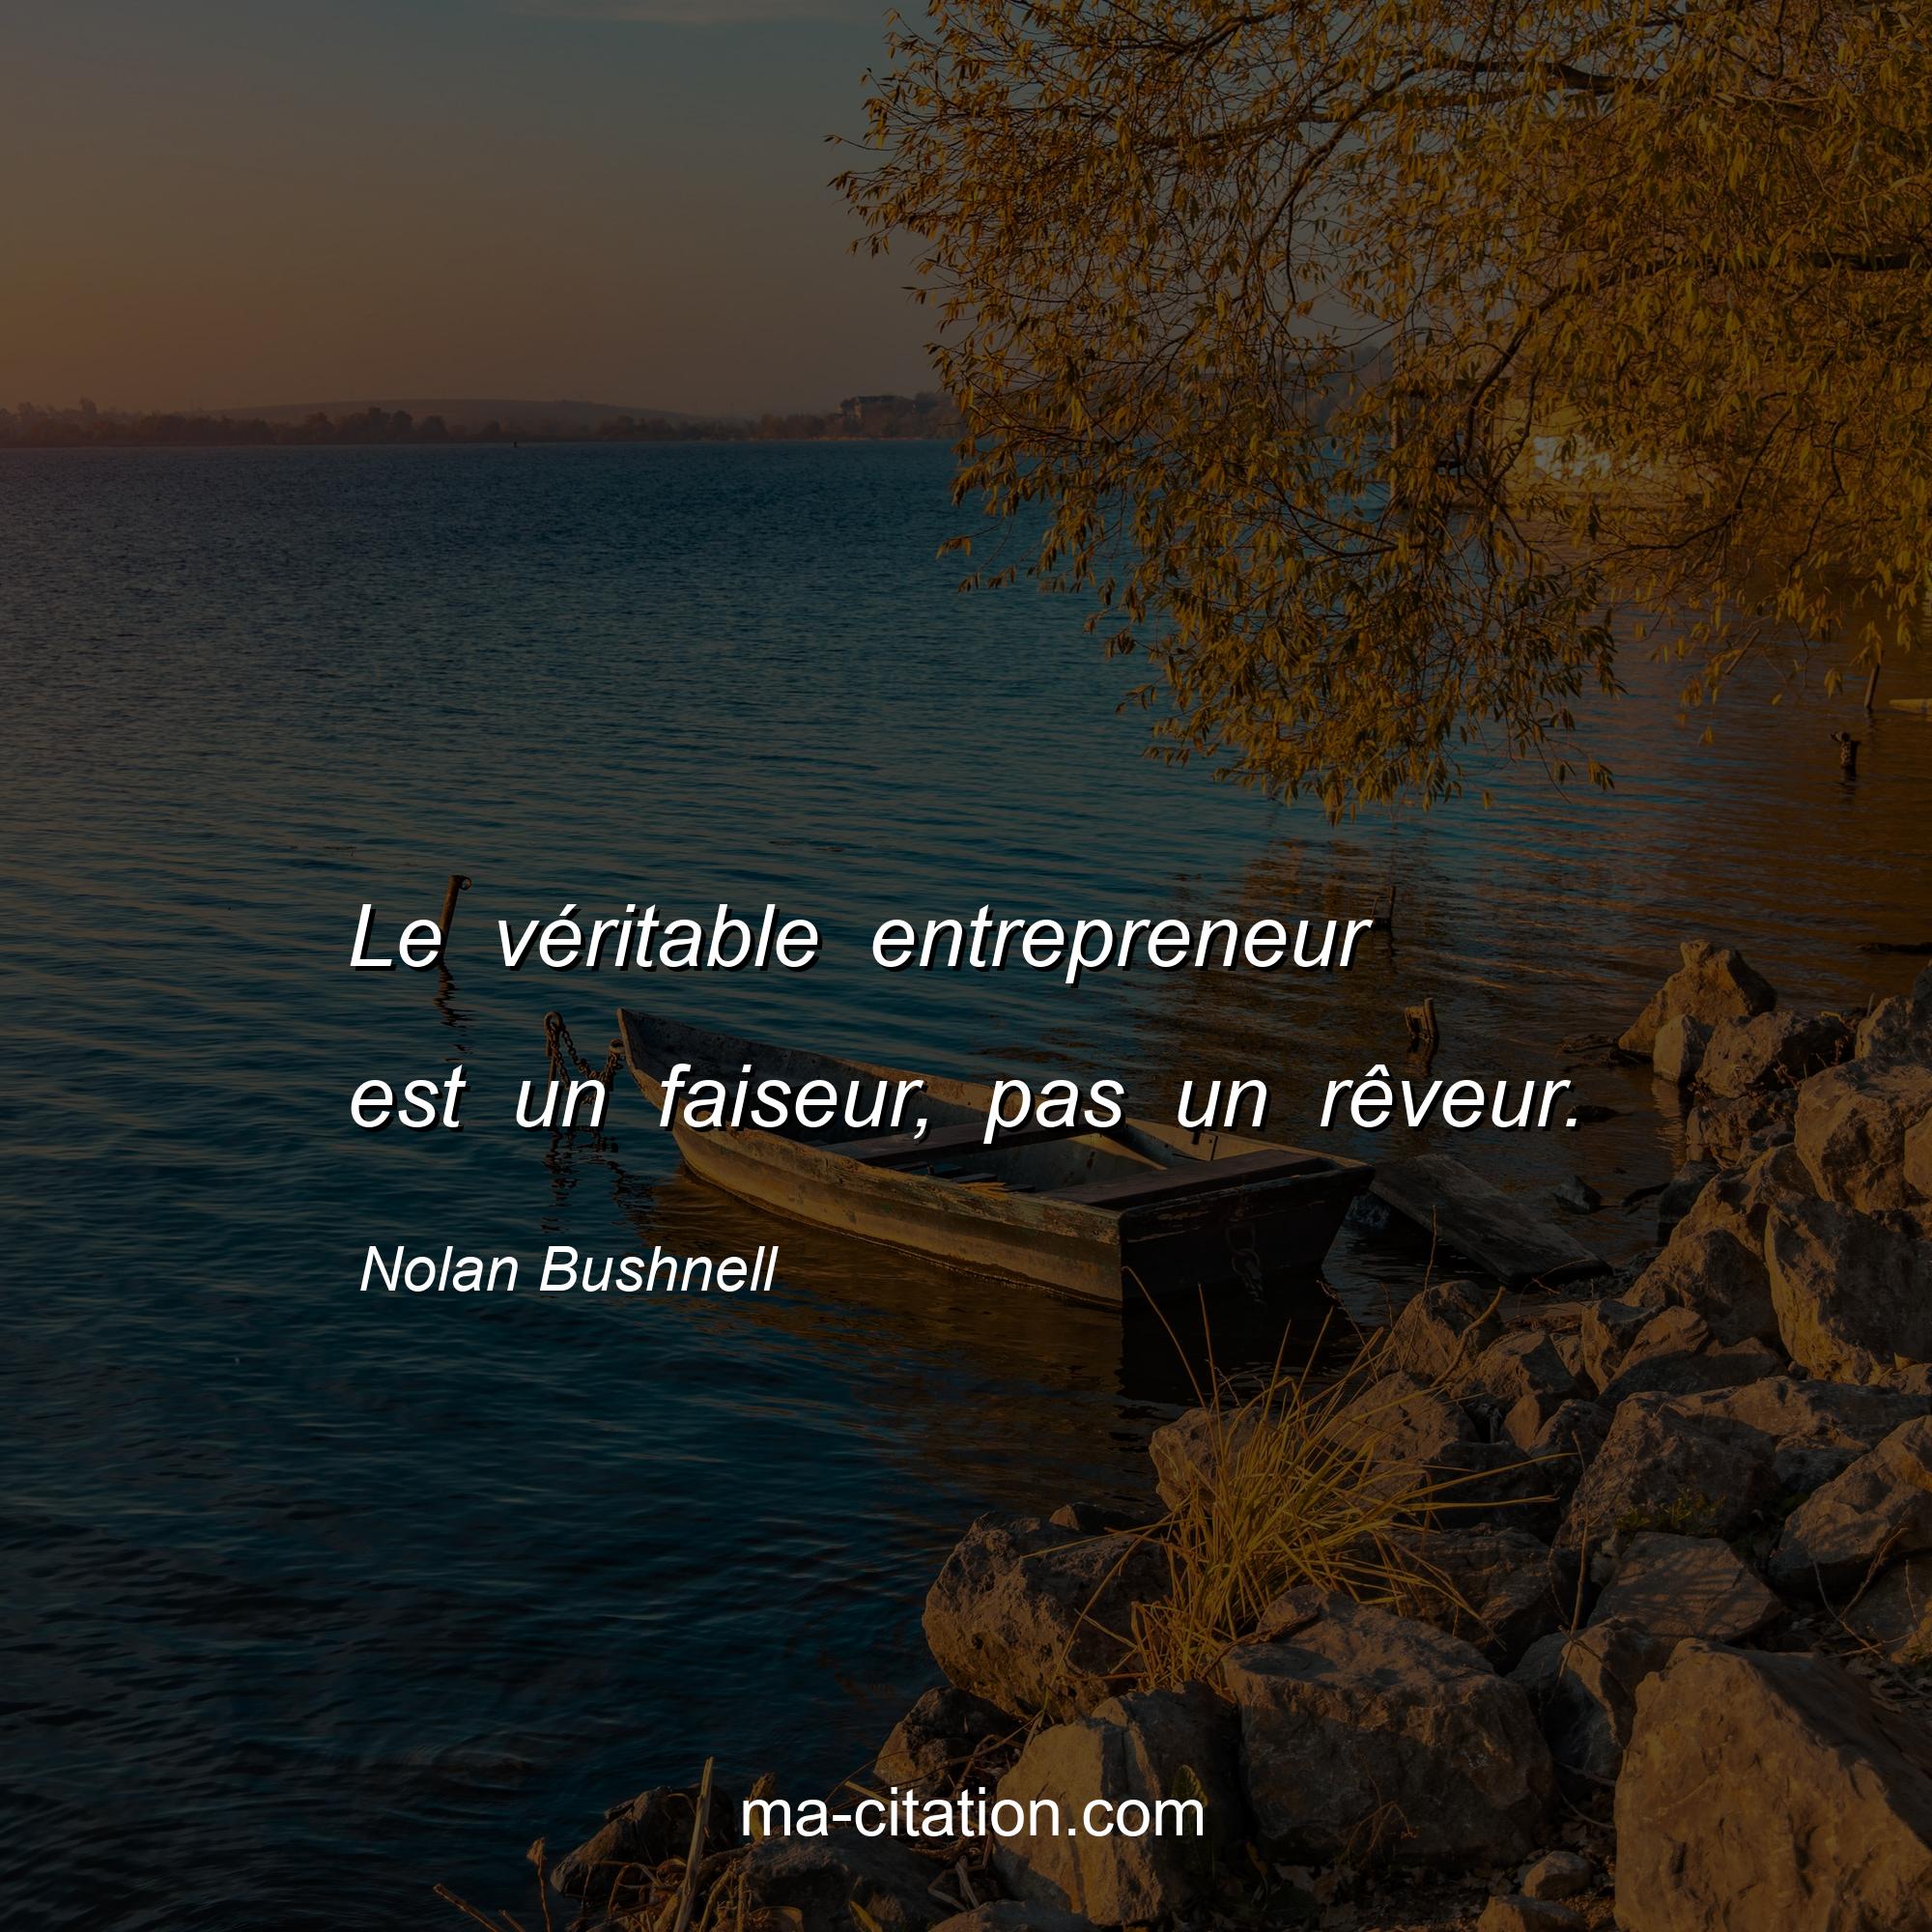 Nolan Bushnell : Le véritable entrepreneur est un faiseur, pas un rêveur.